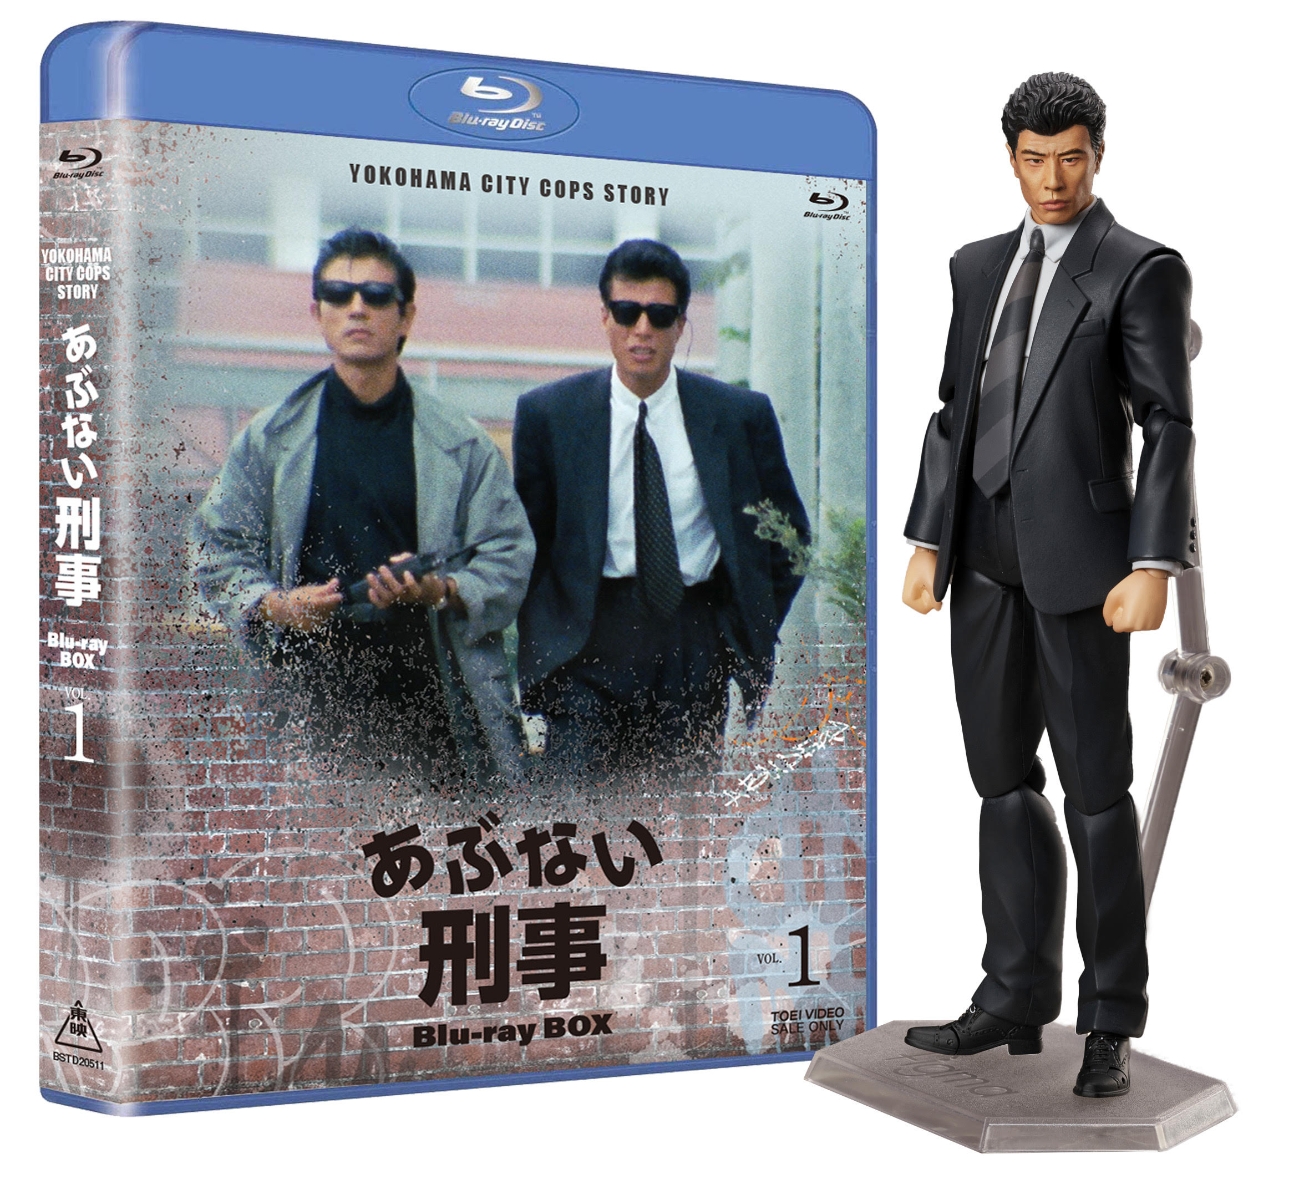 楽天ブックス: あぶない刑事 Blu-ray BOX VOL.1 タカフィギュア付き